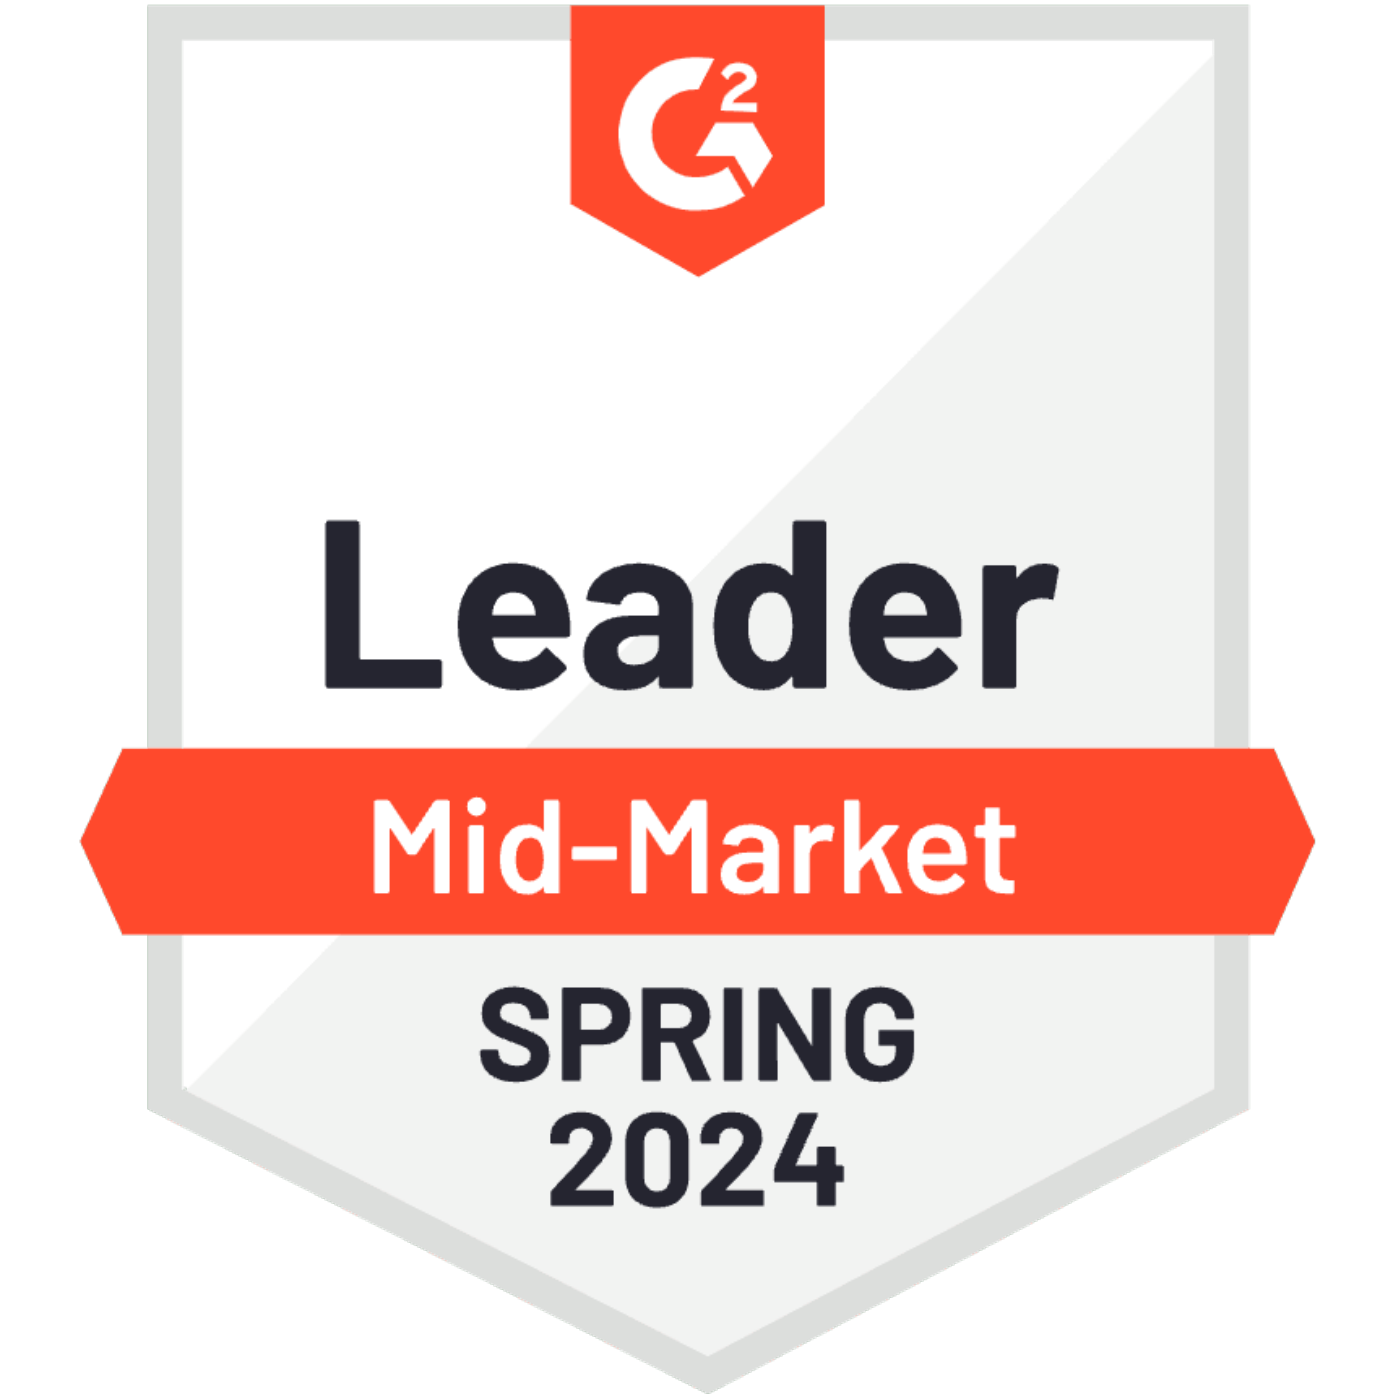 G2_Leader_Mid_Market_Spring_2024_600_600